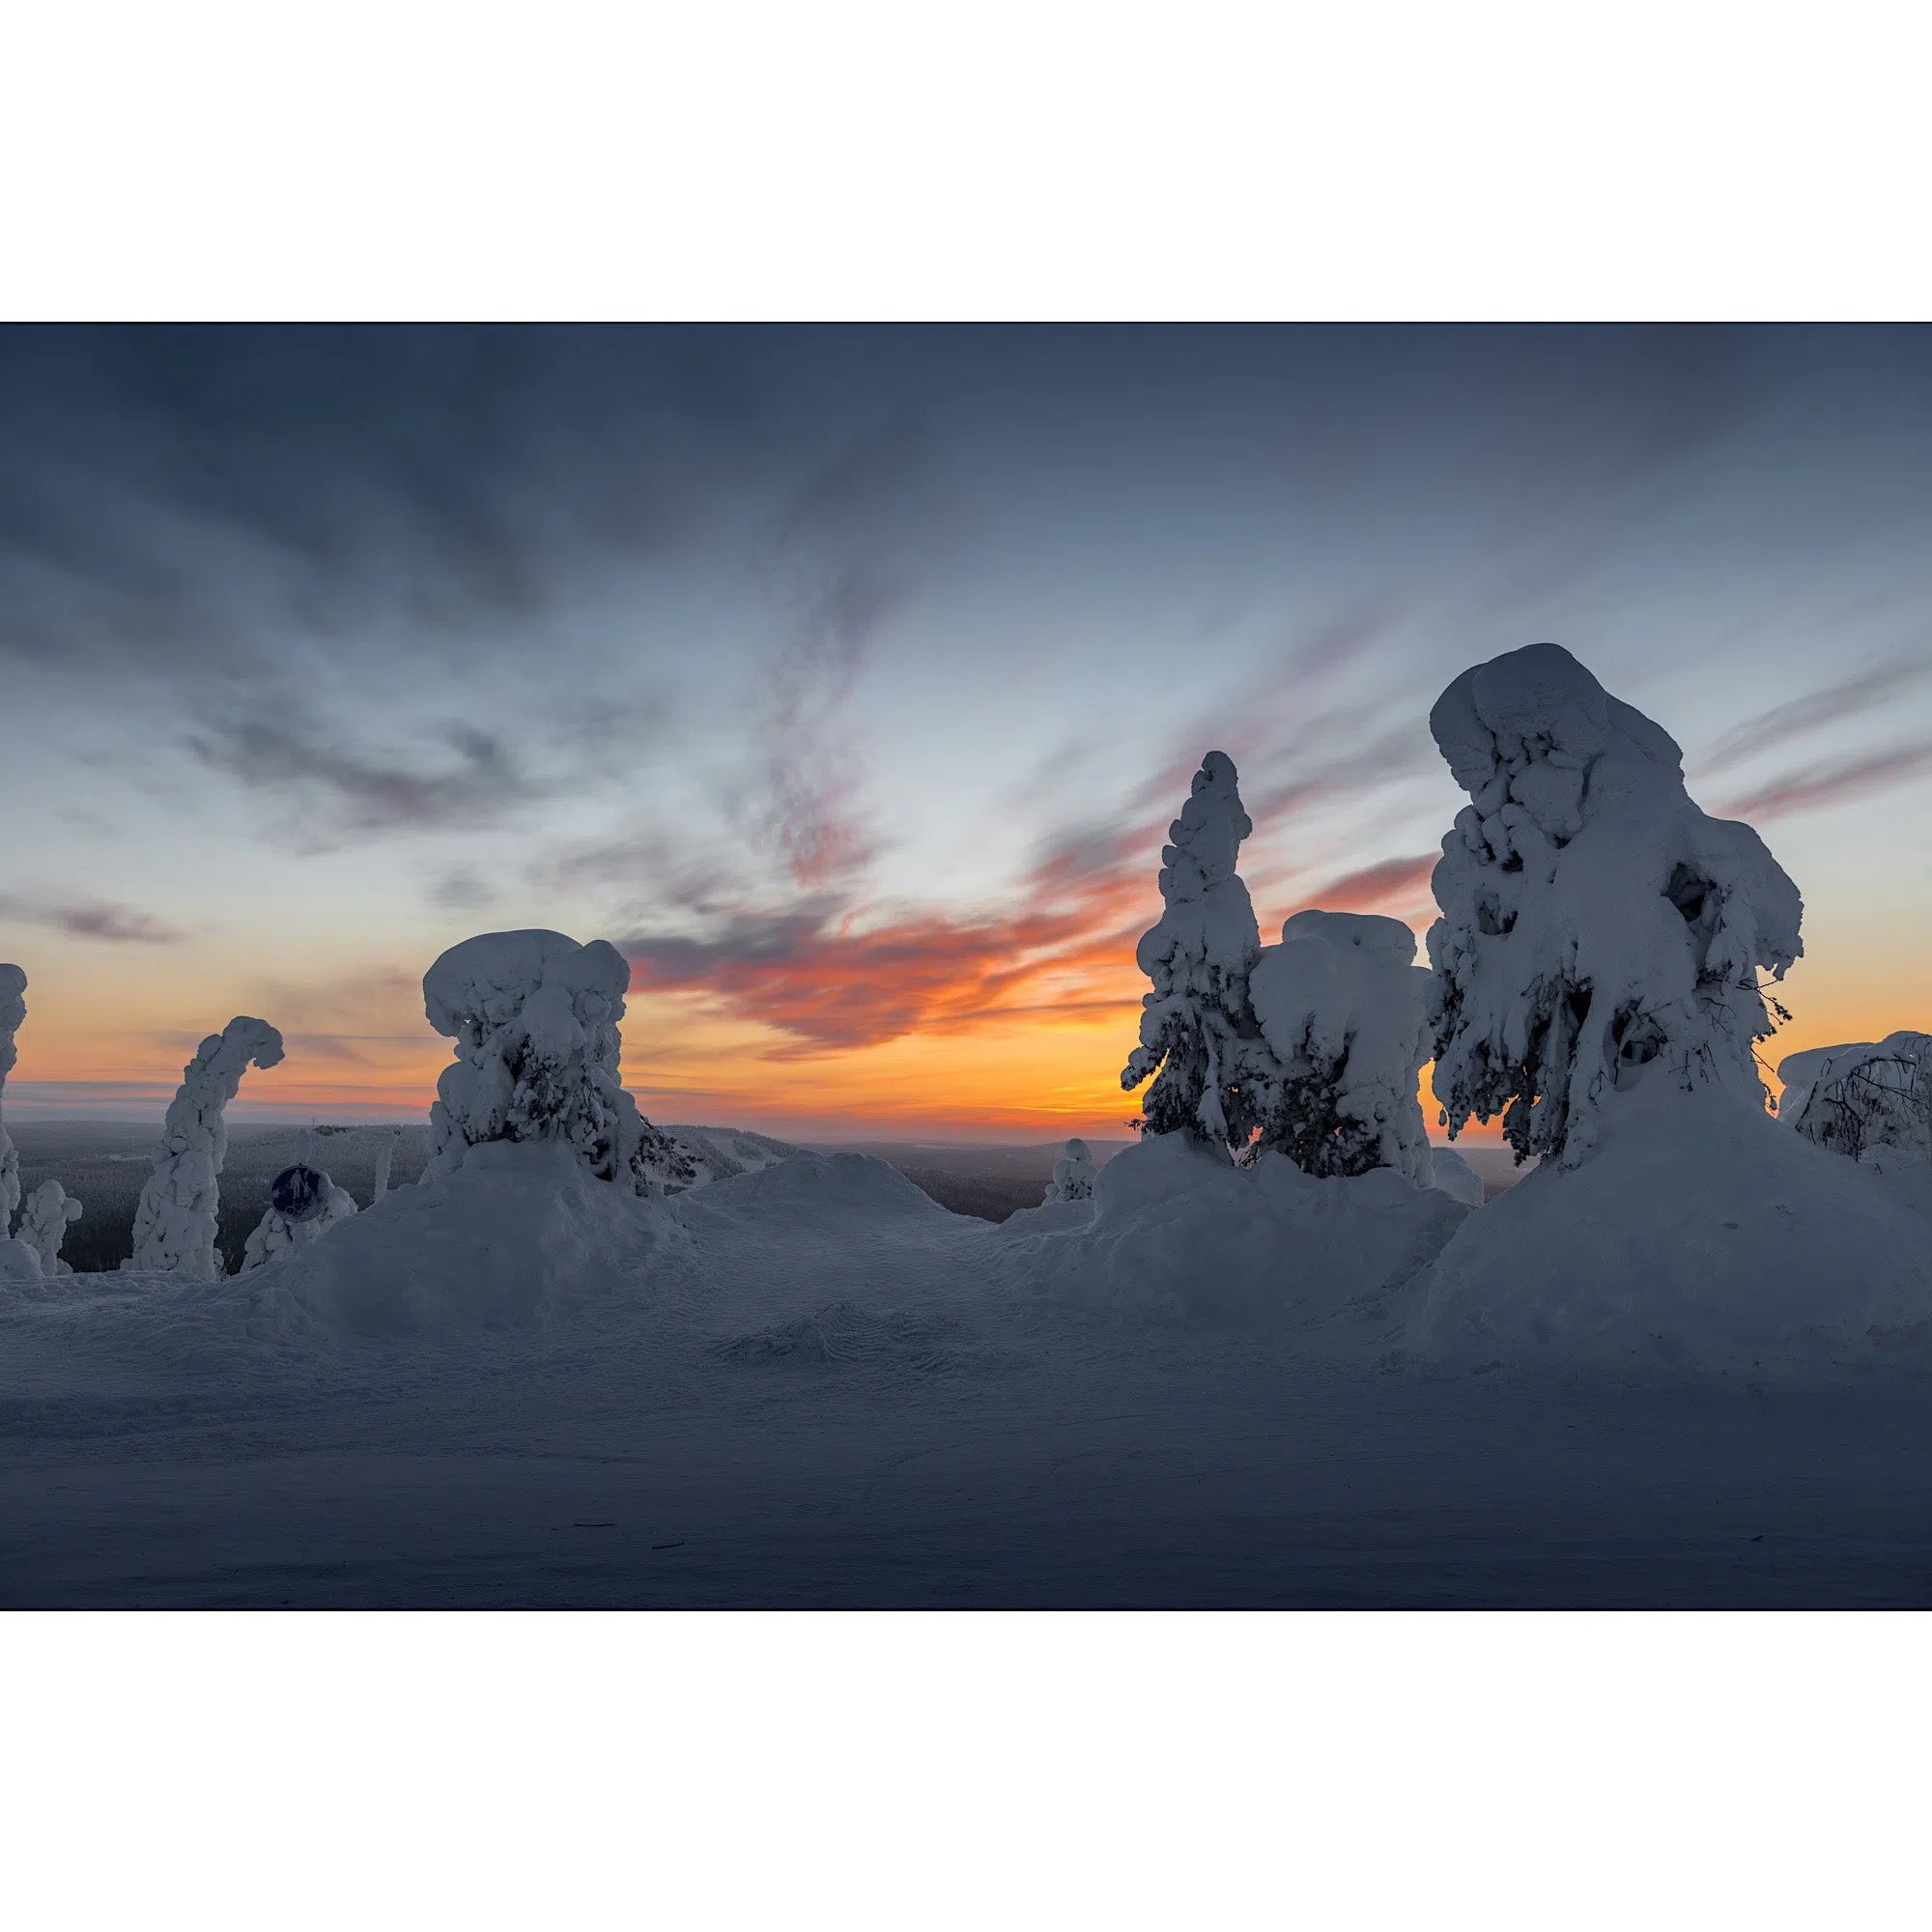 Finland at dawn-Imagesdartistes